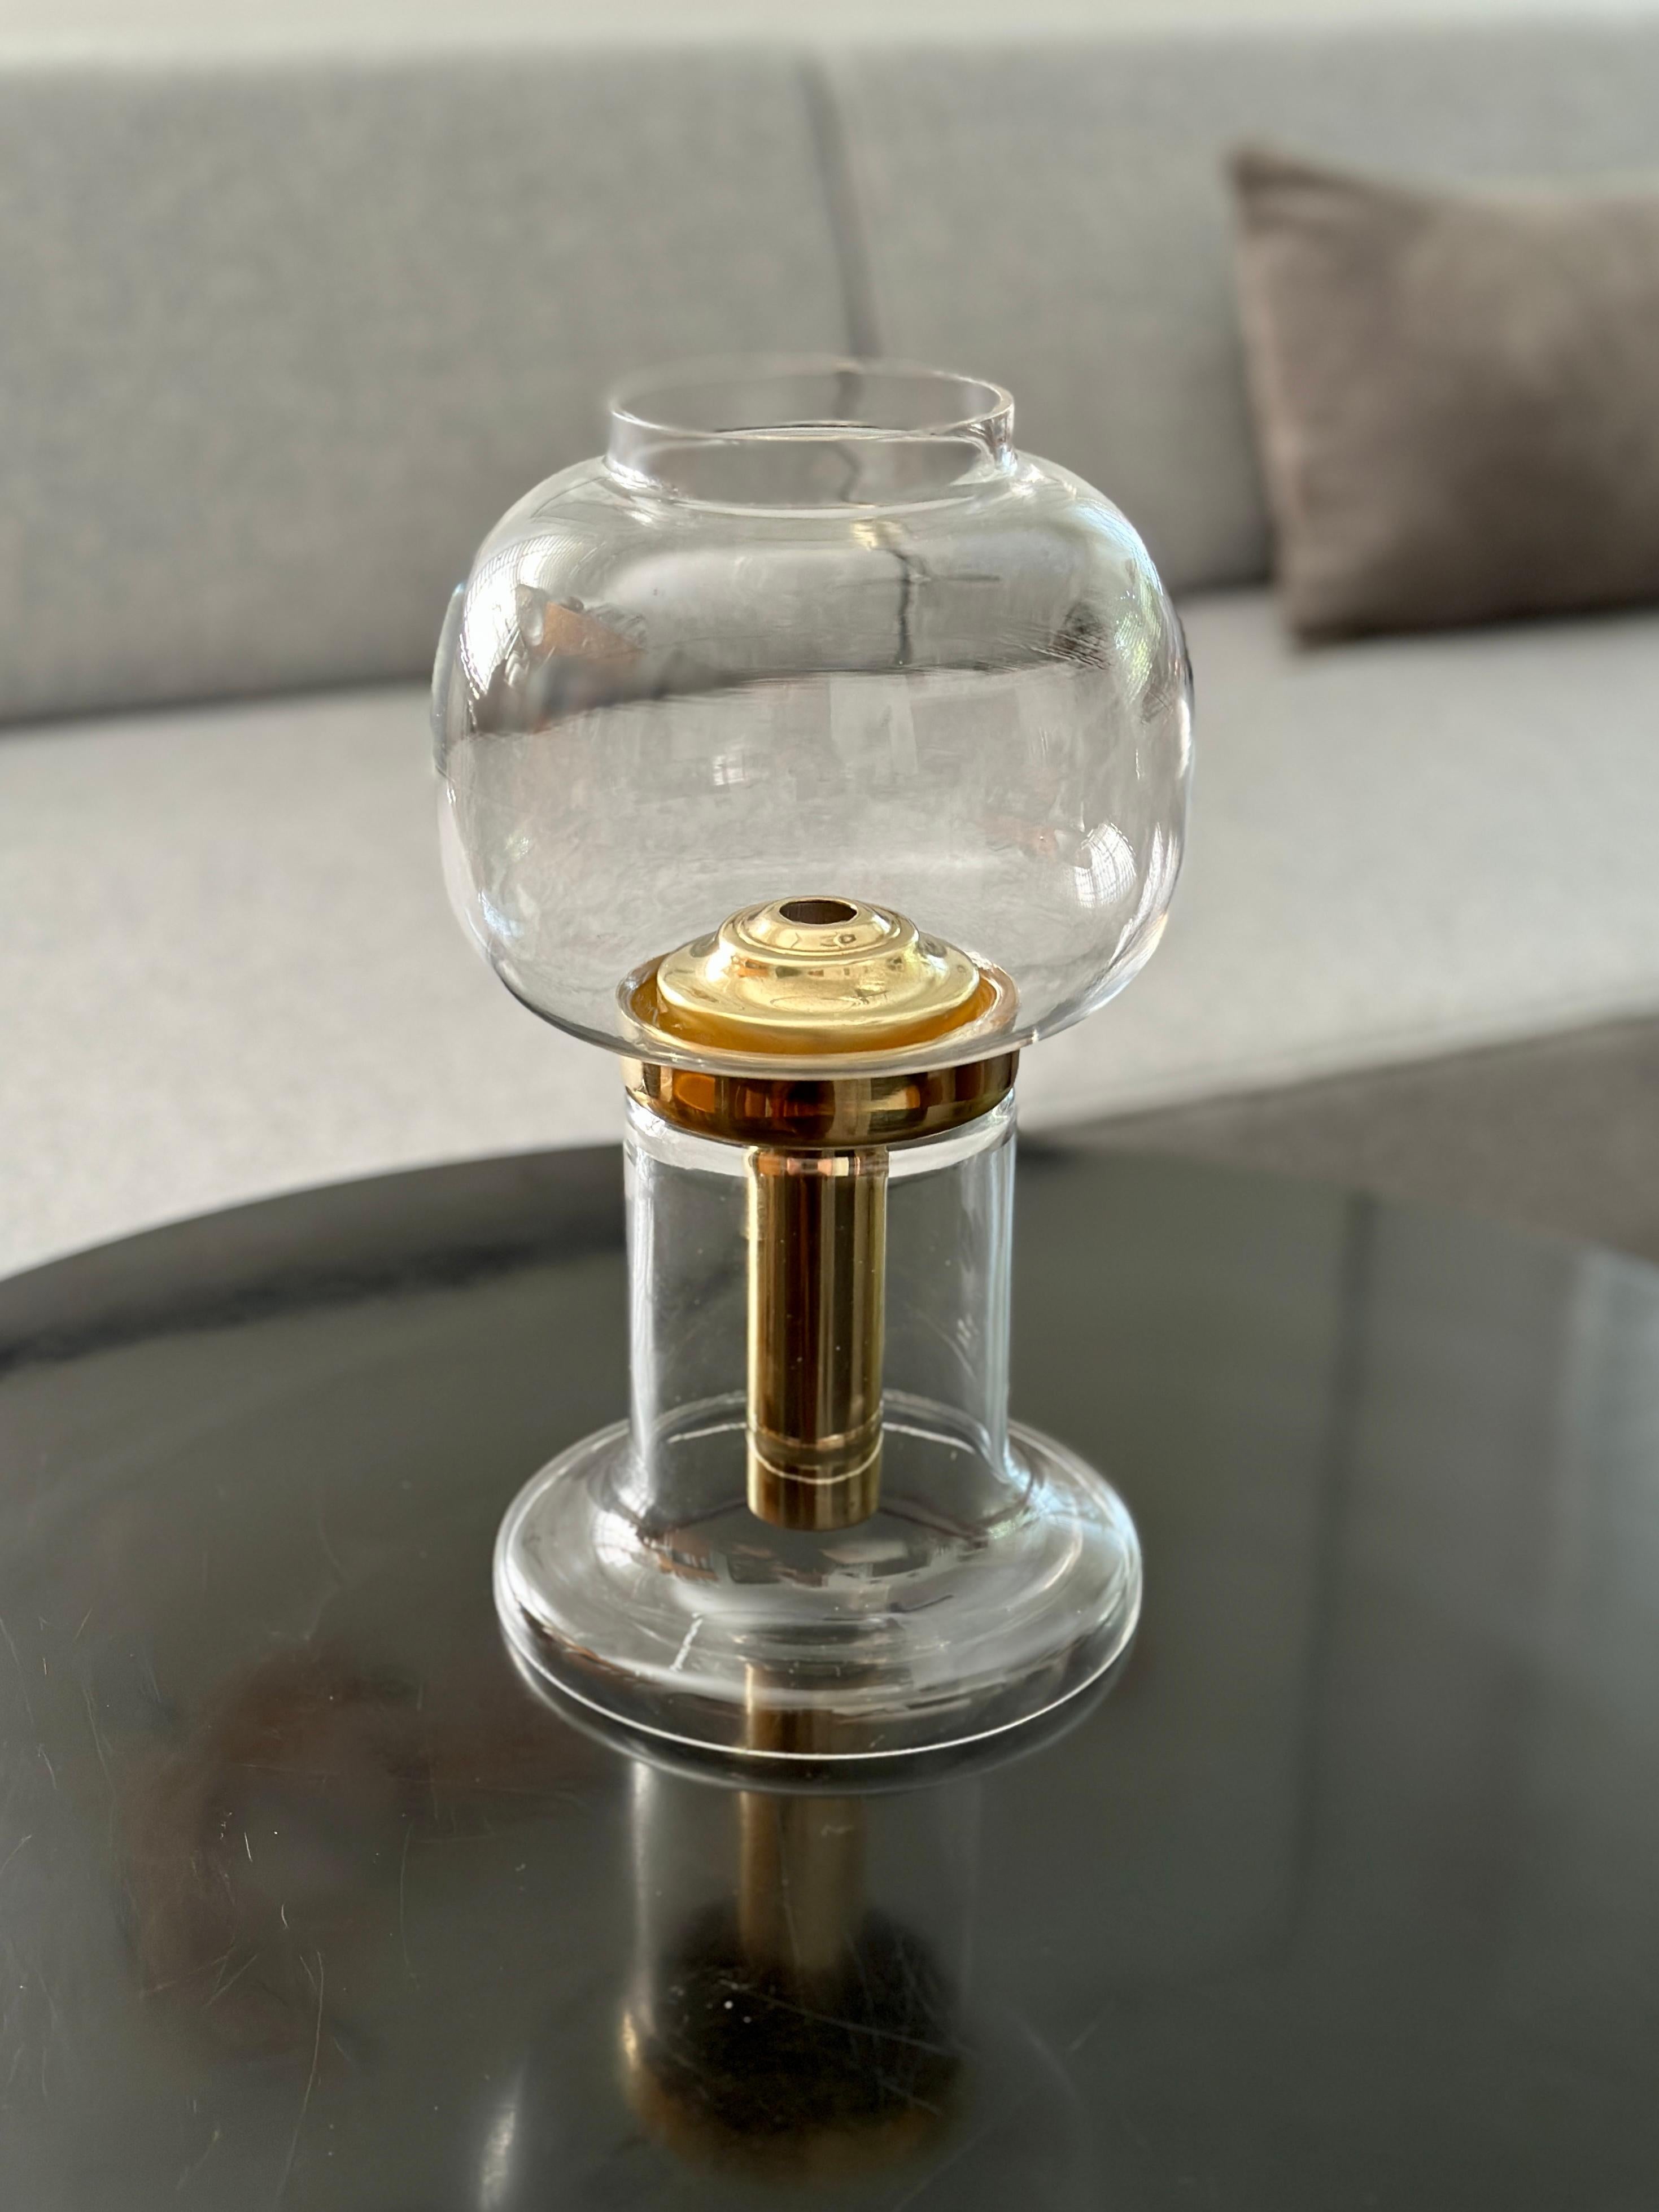 DESCRIPTION

Lampe / lanterne conçue par Hans-Agne Jakobsson et produite par sa propre société, Hans-Agne Jakobsson AB, dans les années 1970. Le mécanisme du bougeoir est en laiton massif avec une base et un globe en verre. Le mécanisme en laiton